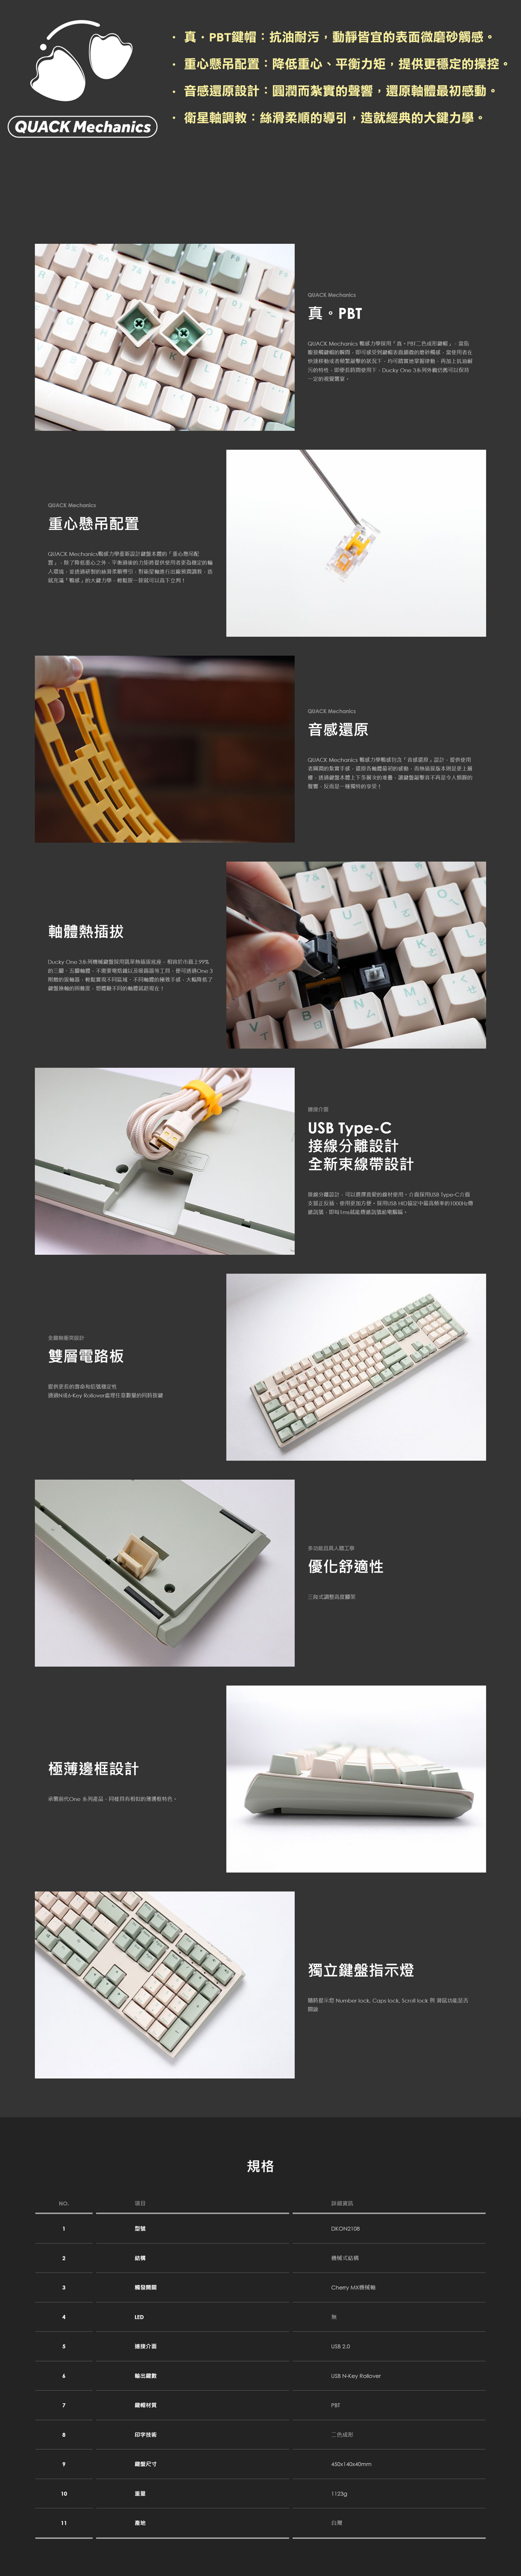 Ducky One 3 抹茶機械式鍵盤-銀軸[100%/PBT/中文] - PChome 24h購物